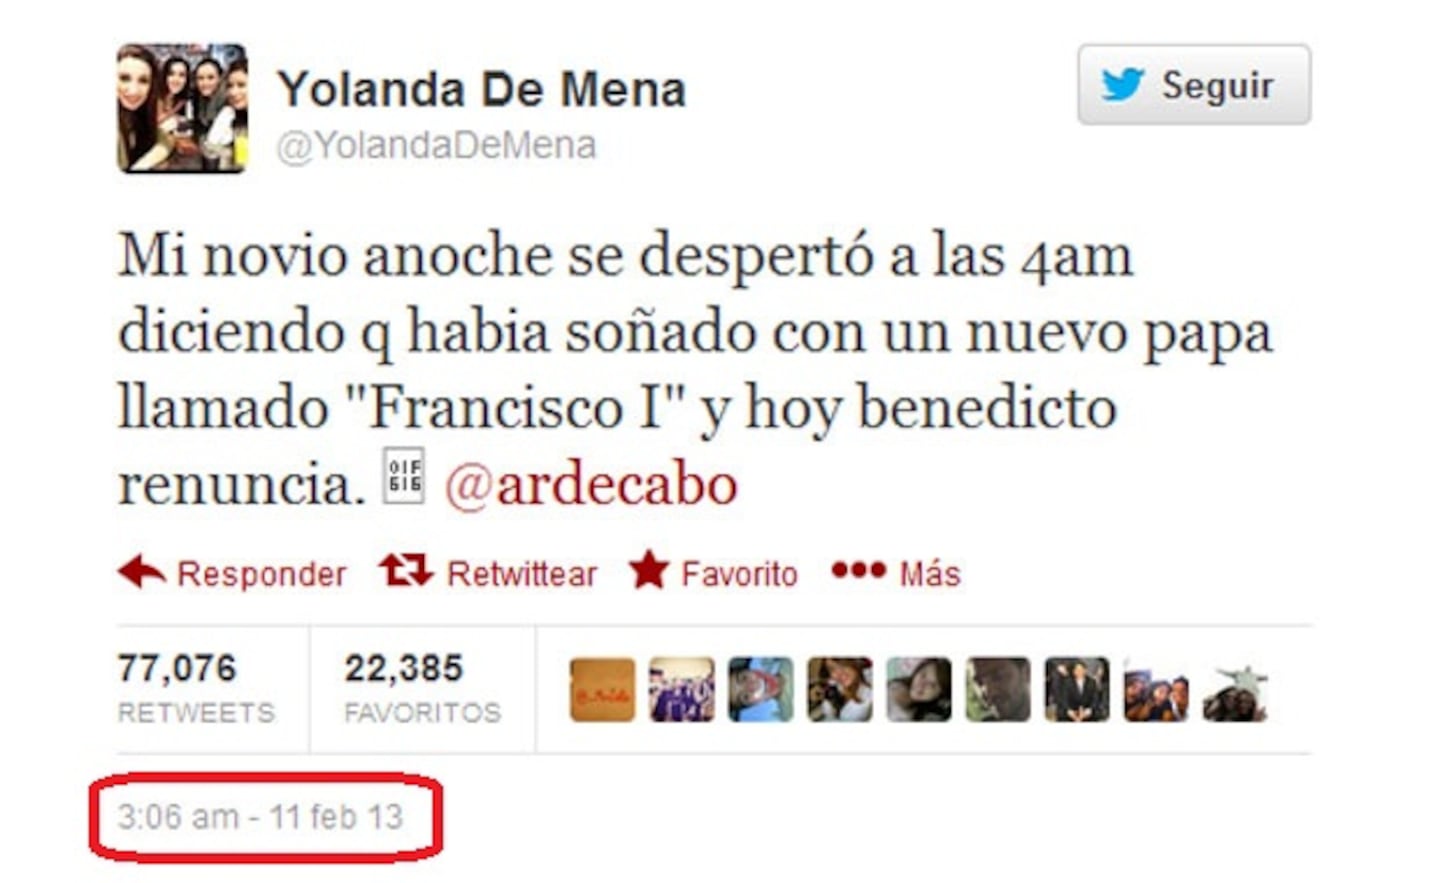 El tweet de @YolandaDeMena, escrito el 11 de febrero, sobre el sueño de su novio.